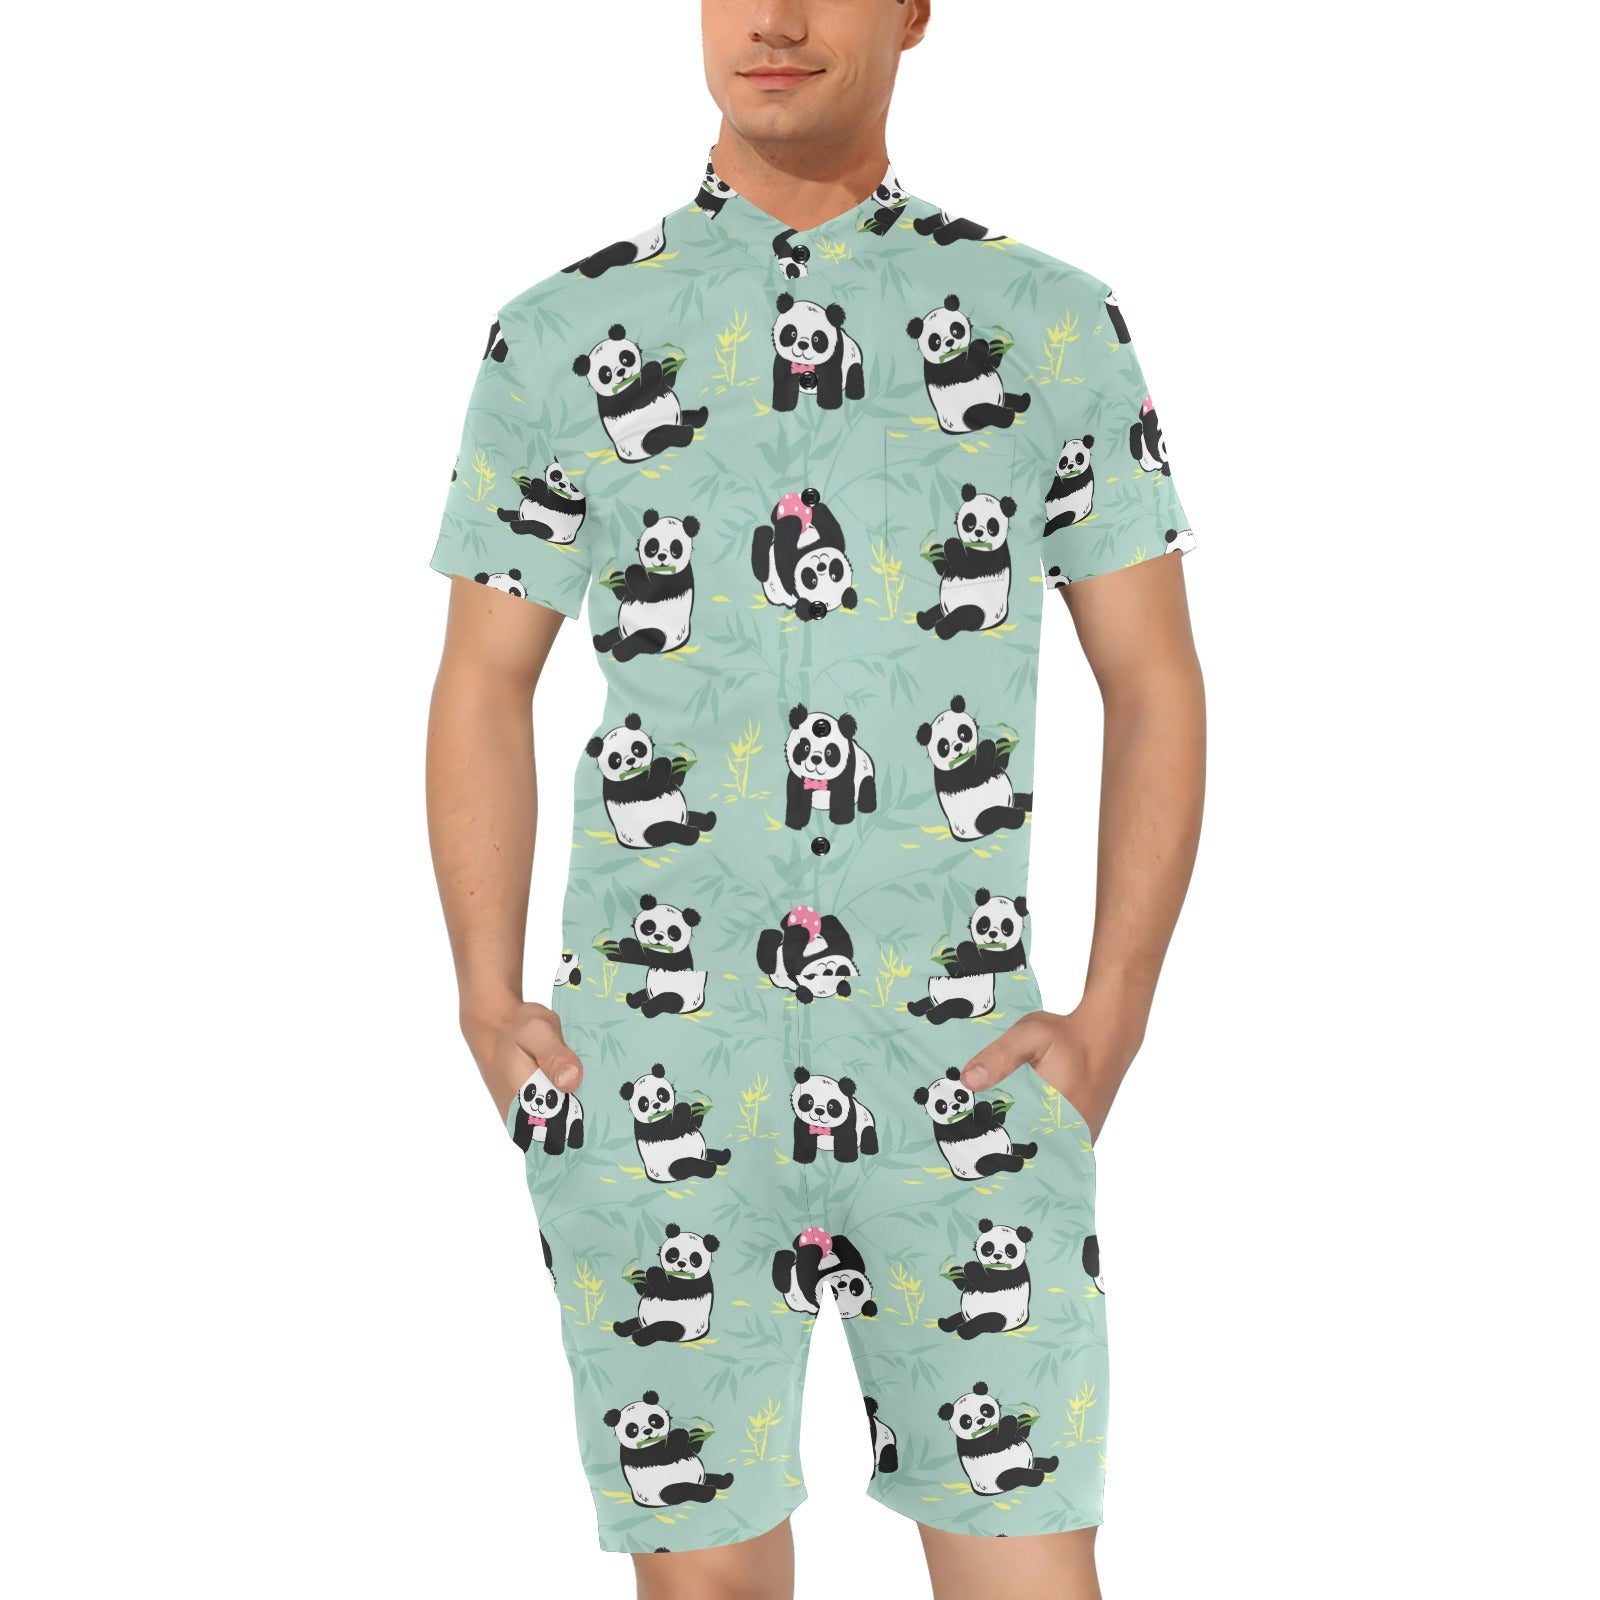 Panda Pattern Print Design A05 Men's Romper